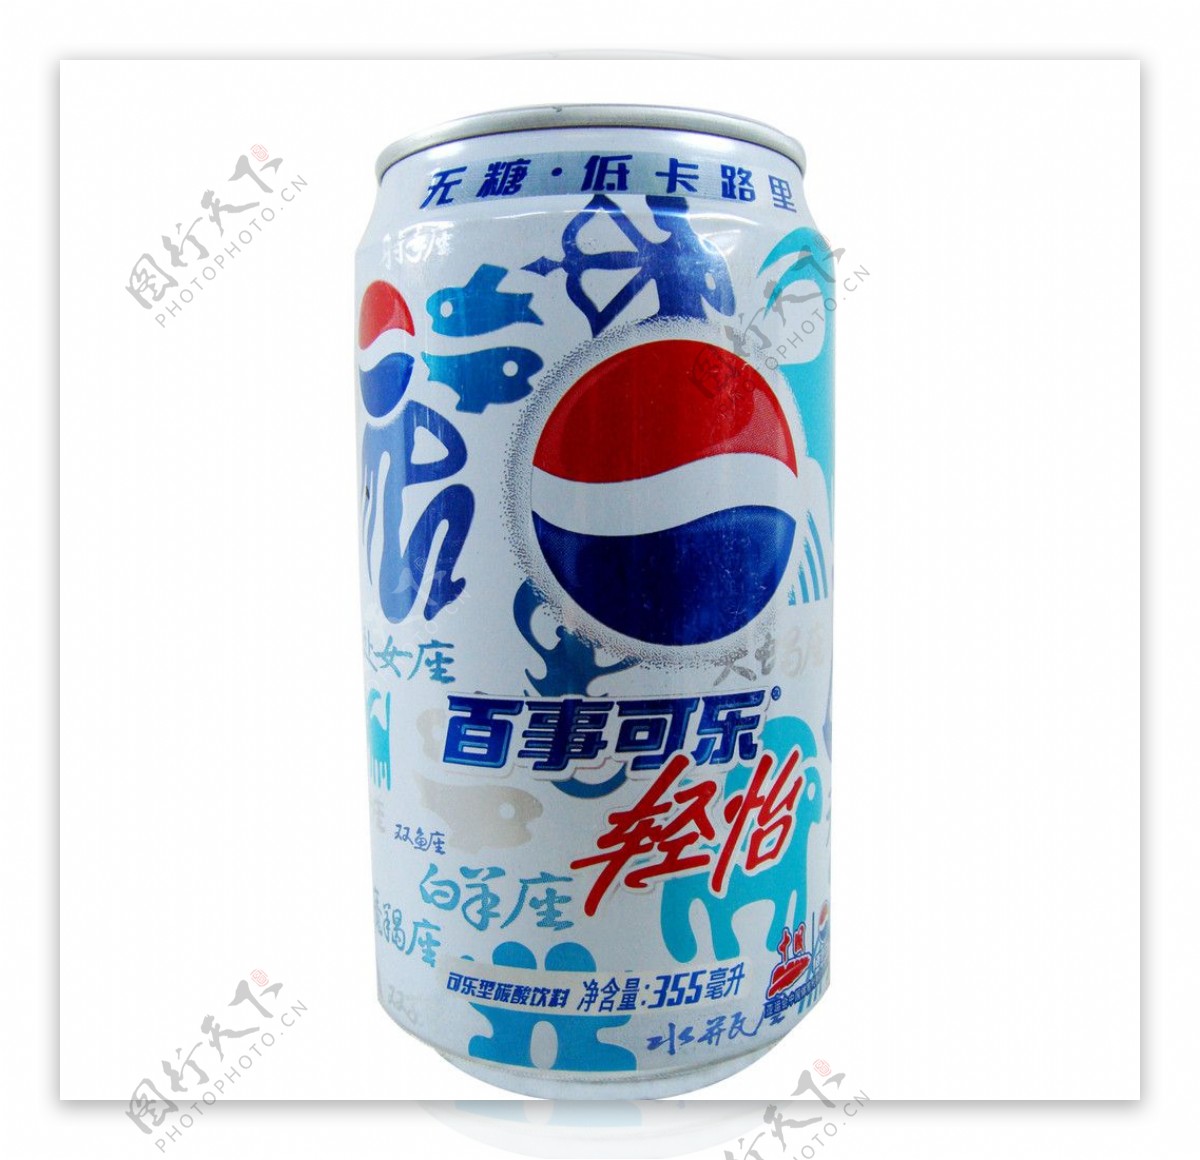 可口可乐易拉罐无糖低卡路里饮料图片